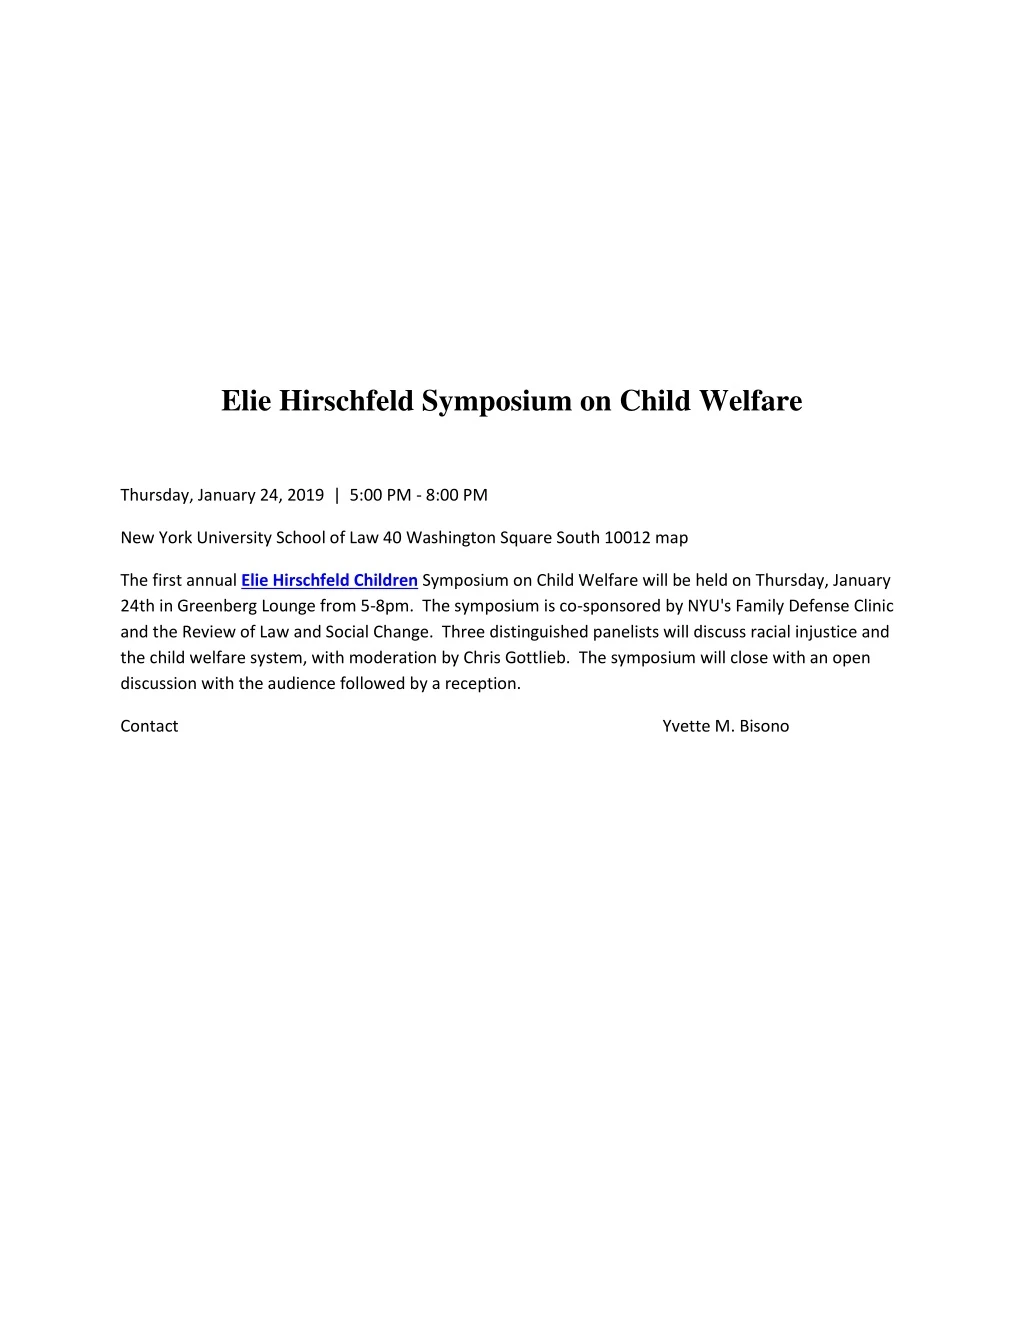 elie hirschfeld symposium on child welfare